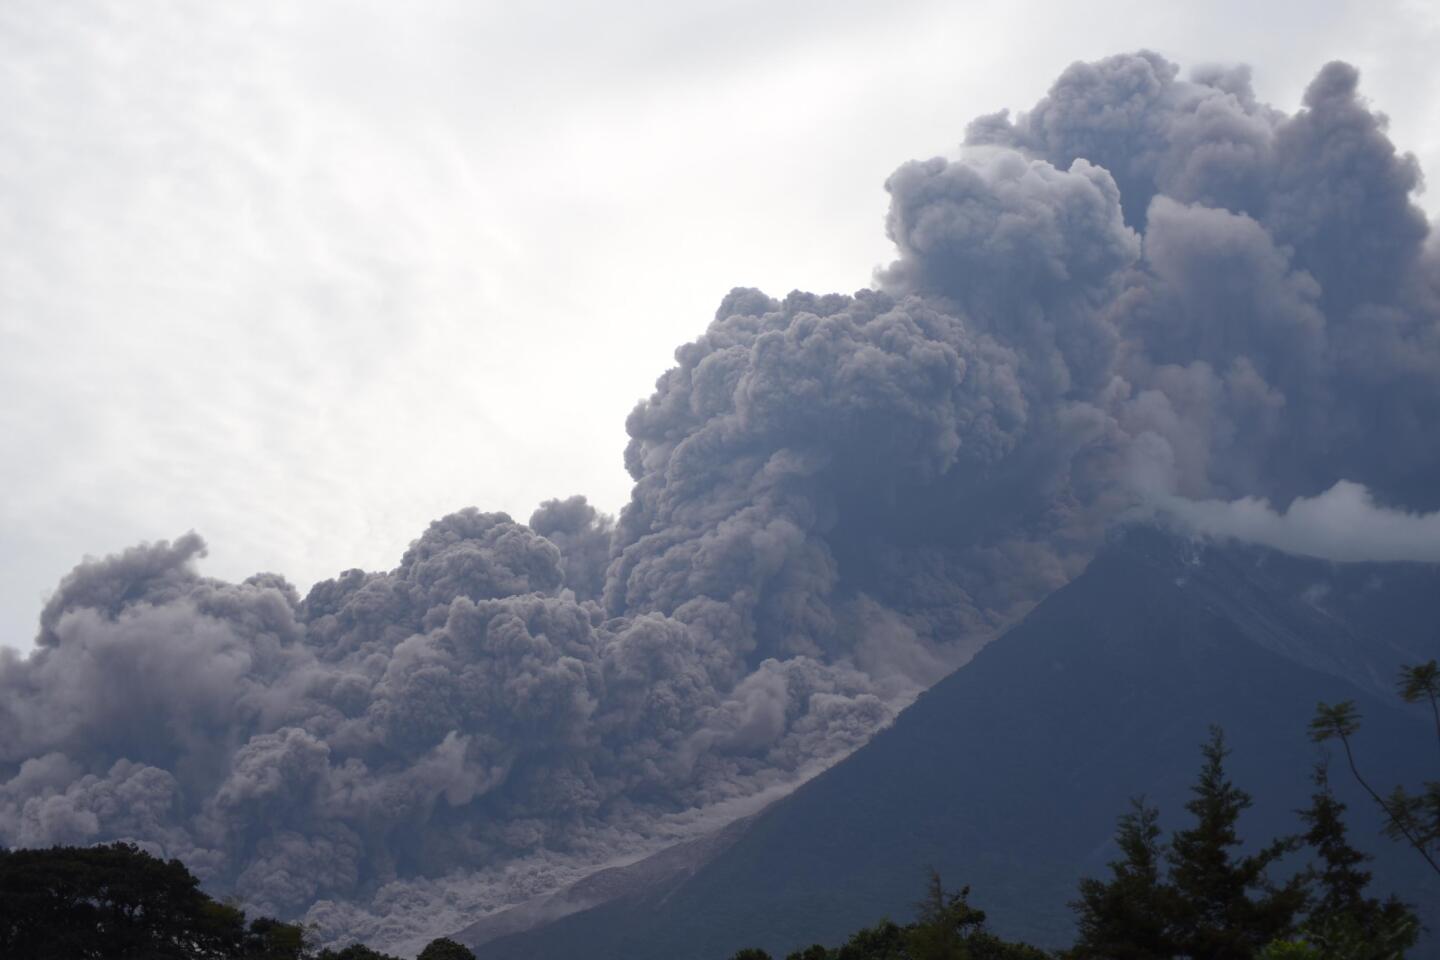 Fuego Volcano erupts in Guatemala